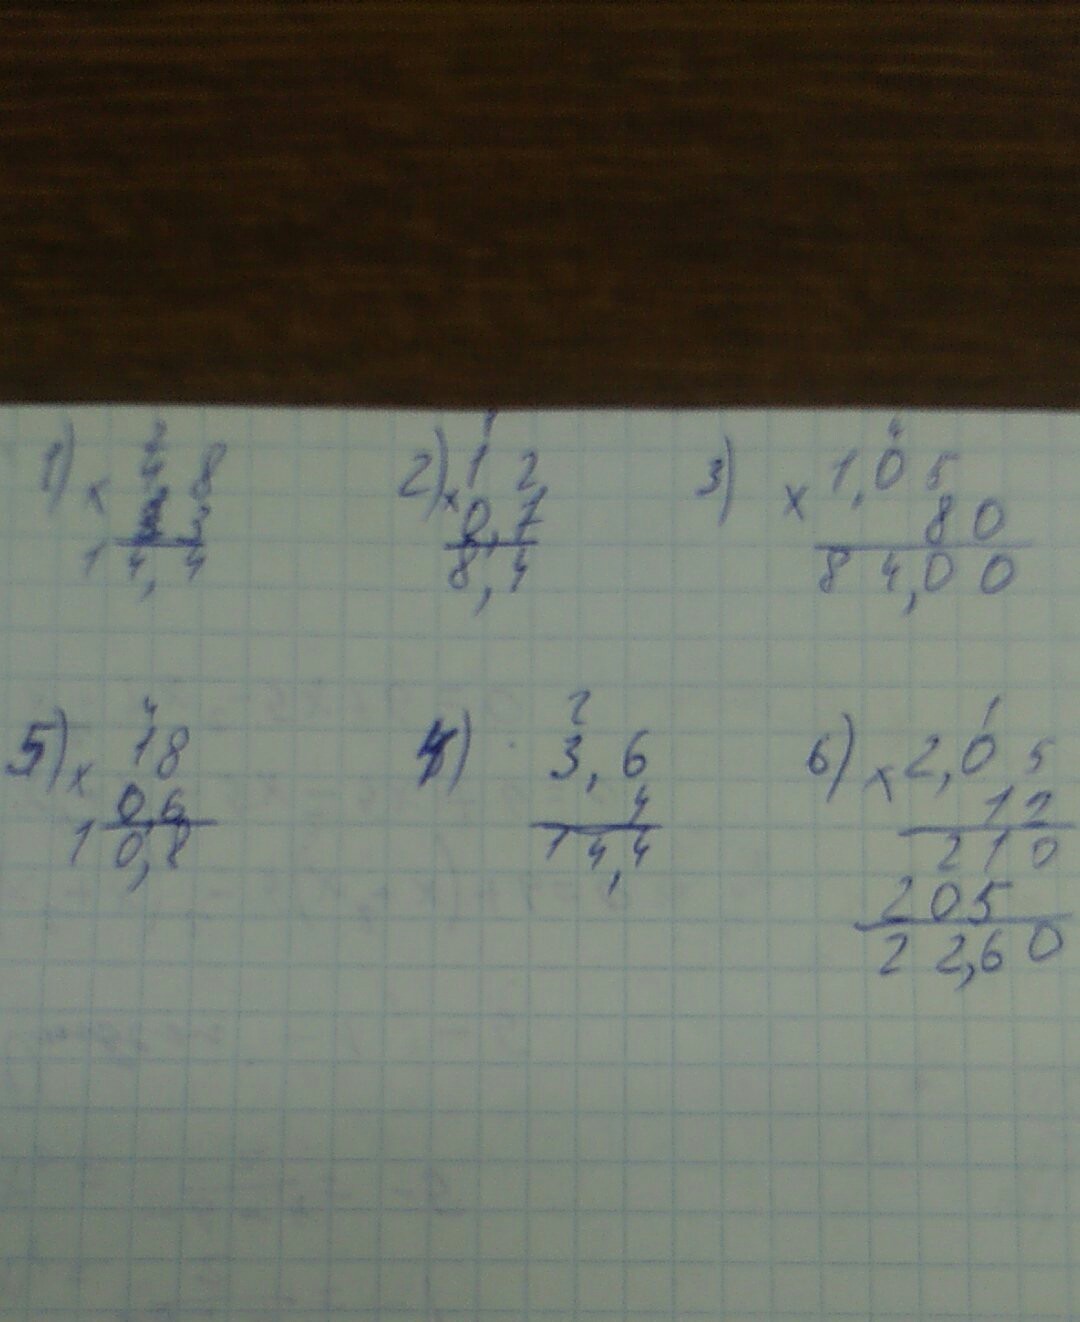 3 25 4 2 3 6 решение. 1.5/6-0,5•(-4/3) Решить. (5-2,8)*2,4+1,12:2,6 Столбиком. 2,3-1,5+0,7-0,02 Столбиком. (6,3÷1,4-2,05 решения столбиком.